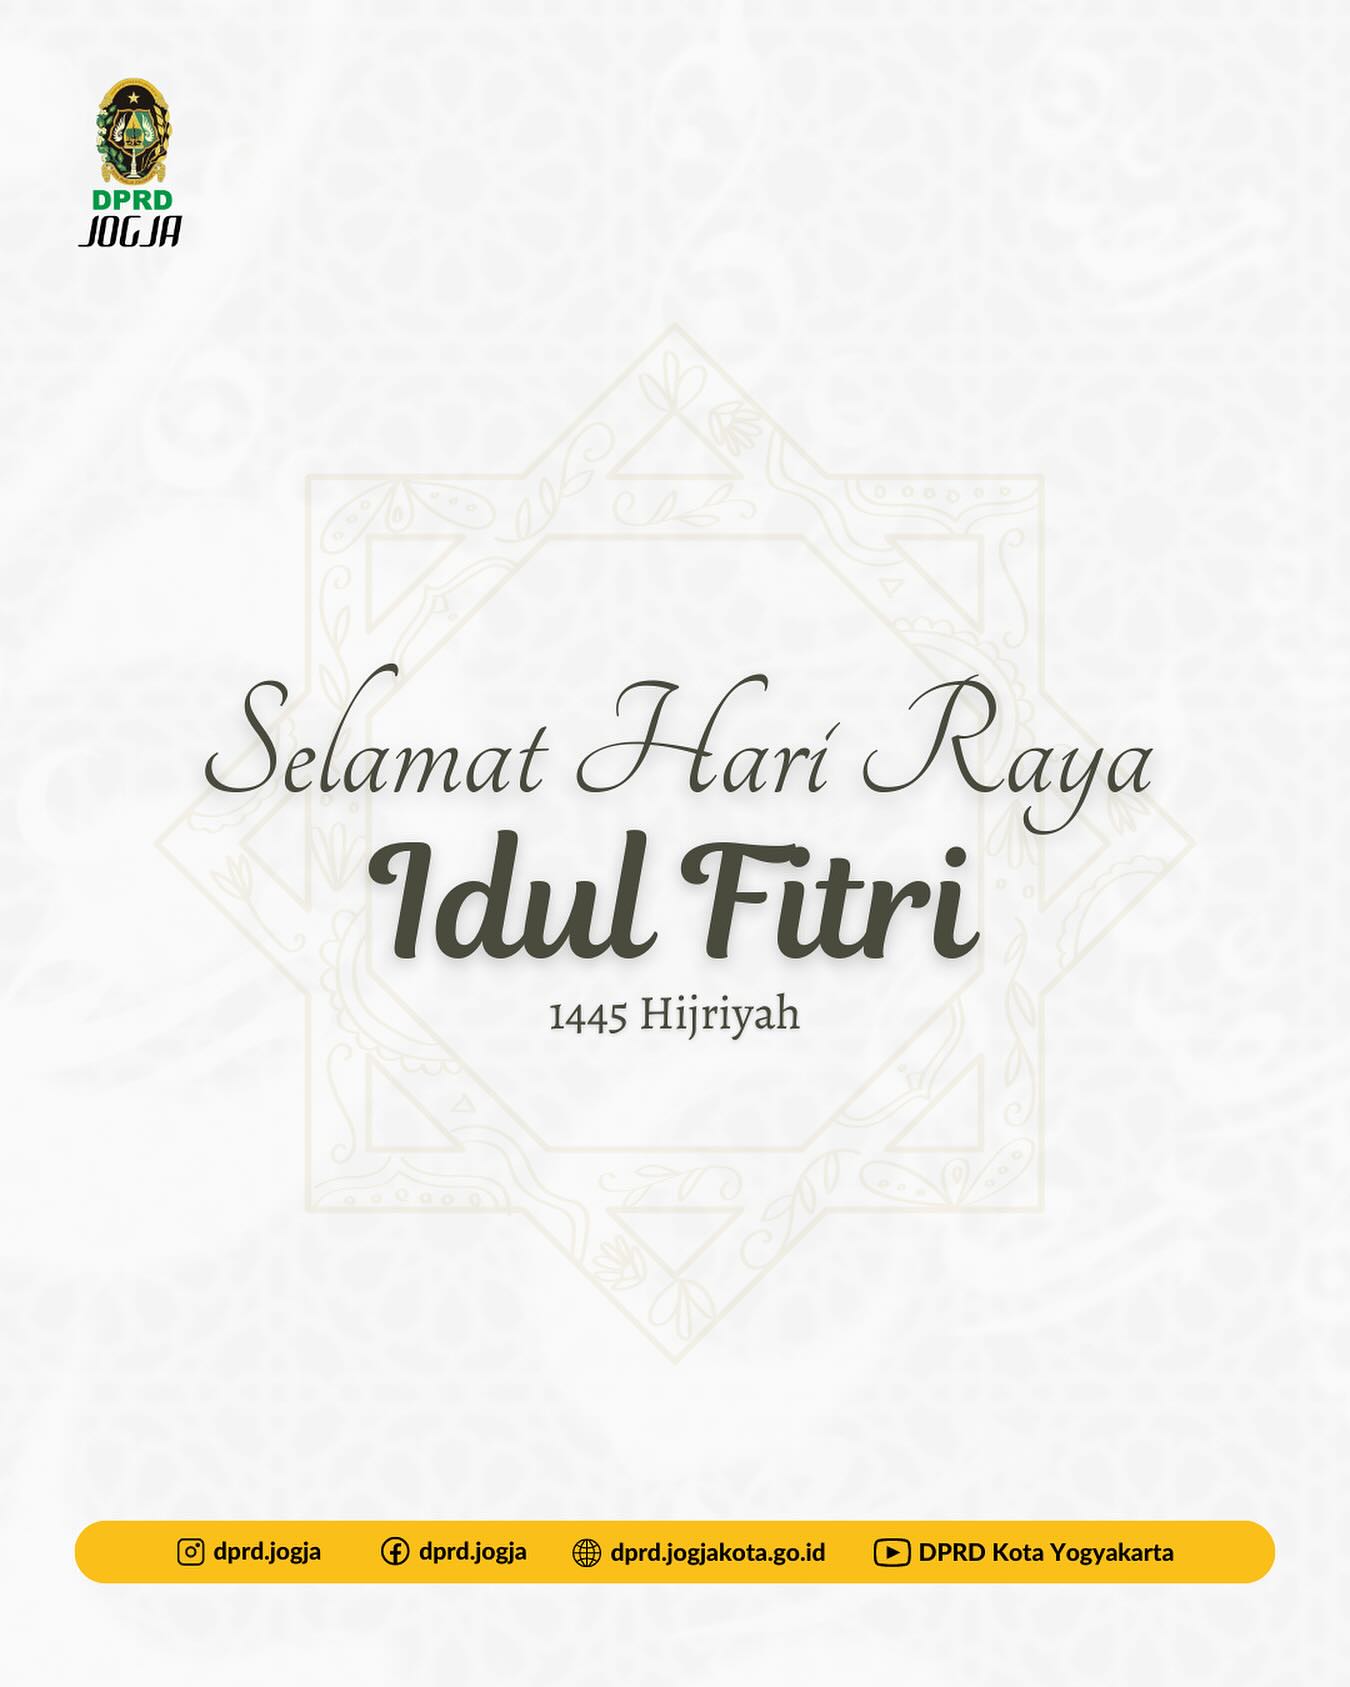 Sekretariat DPRD Kota Yogyakarta Mengucapkan, Selamat Hari Raya Idul Fitri 1445 Hijriyah.